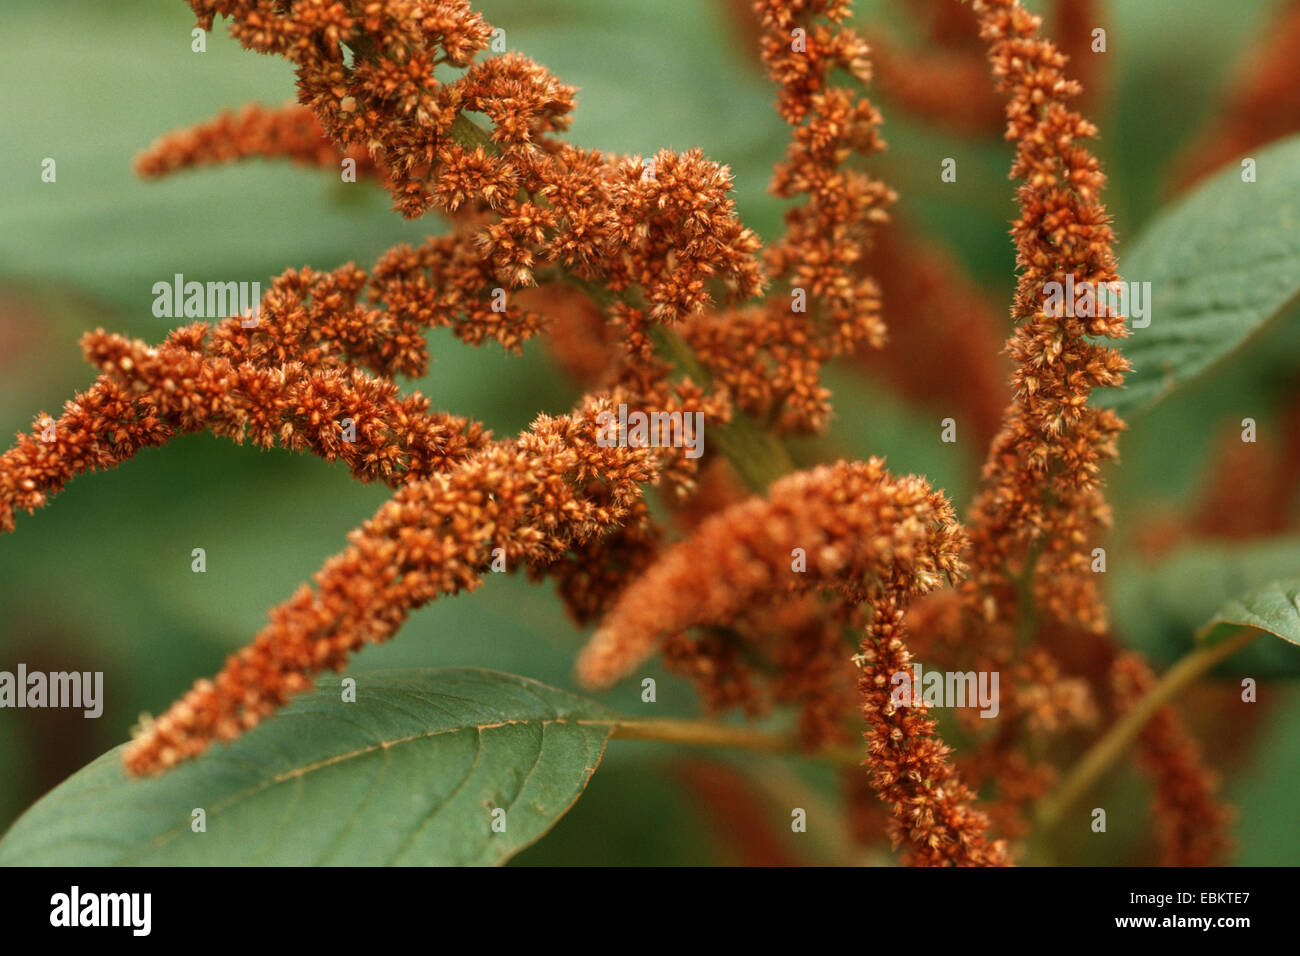 L'amarante (Amaranthus cultivar 'Bronze Leaf', Amaranthus Bronce Leaf), inflorescence Banque D'Images